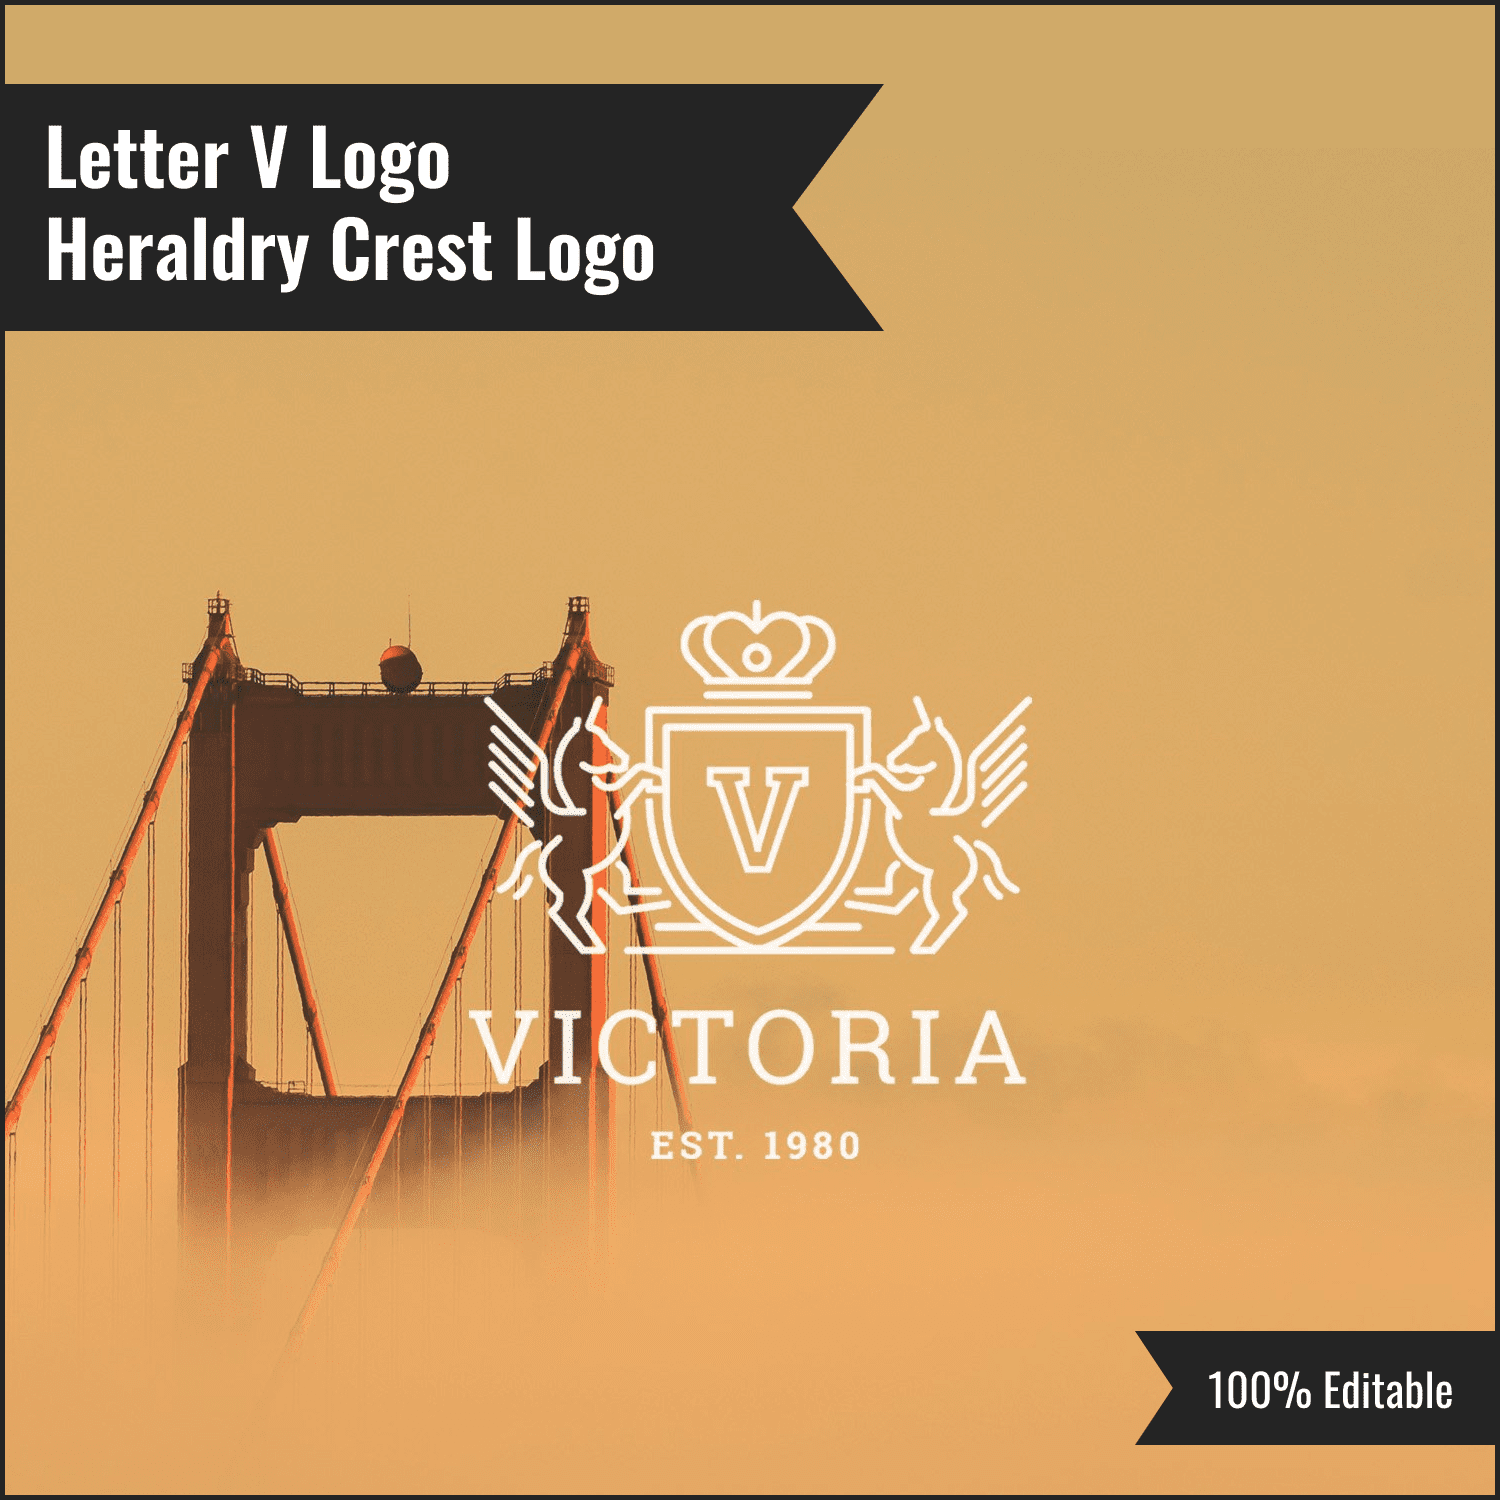 Letter V Logo - Heraldry Crest Logo.